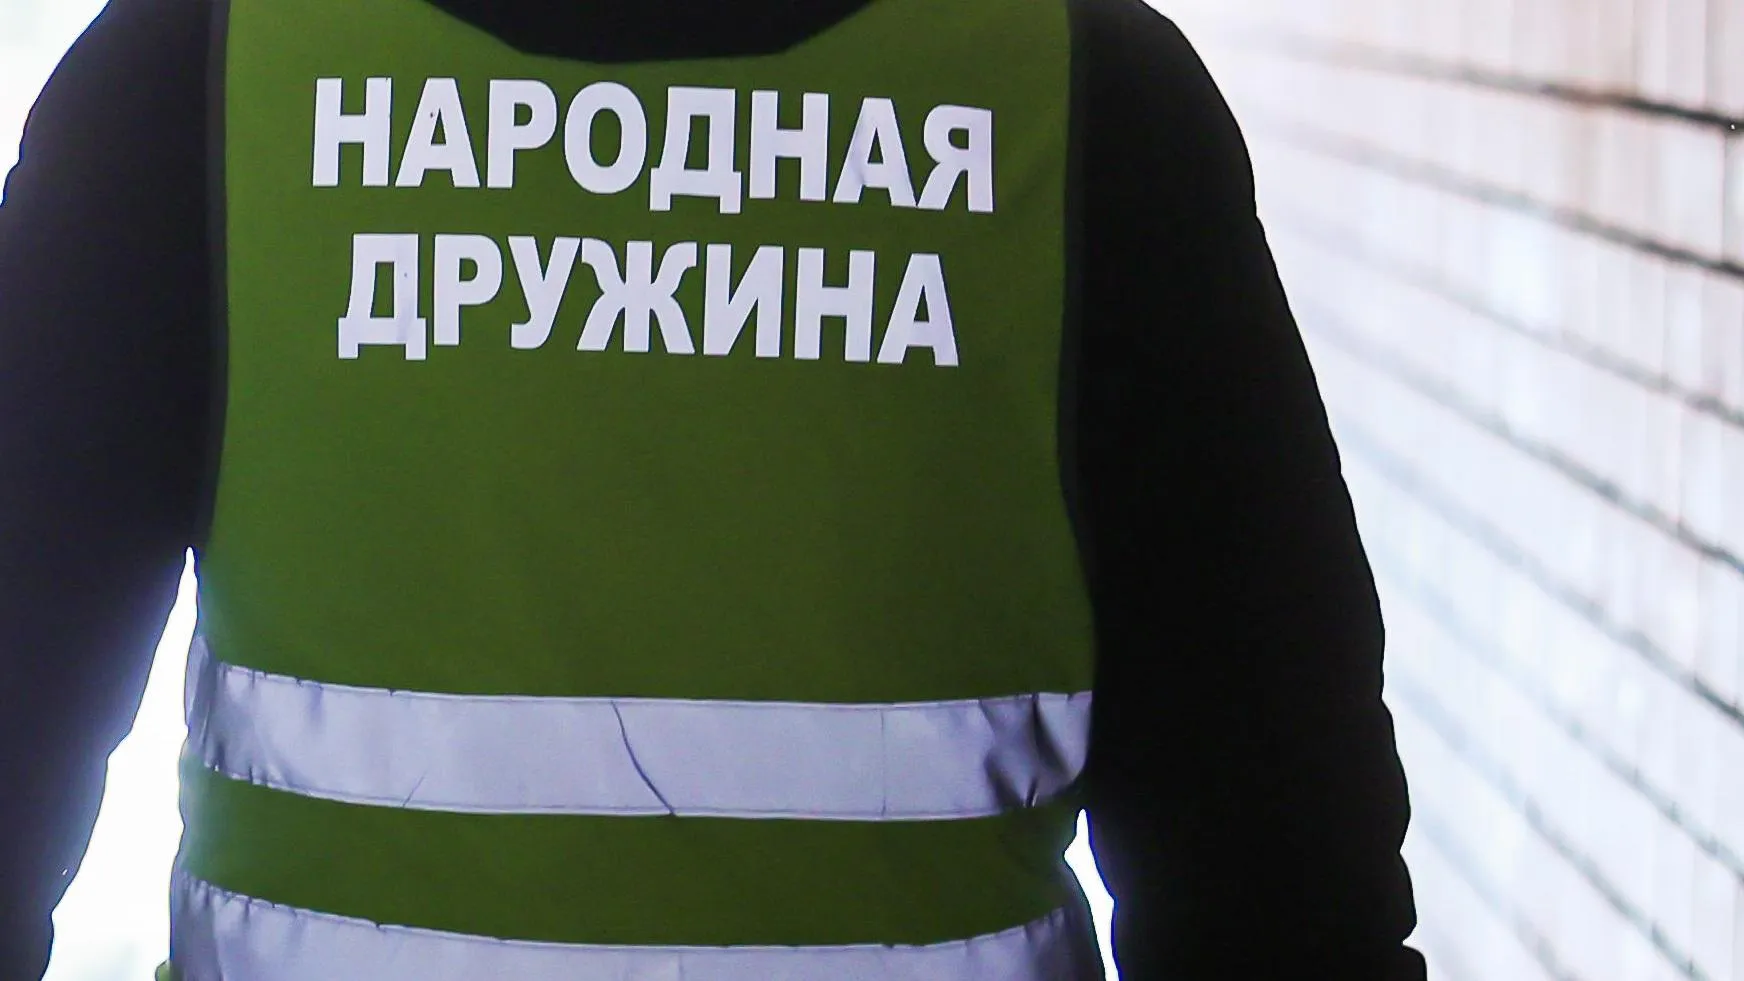 Свыше 20 преступлений выявили народные дружинники в Подмосковье с начала года